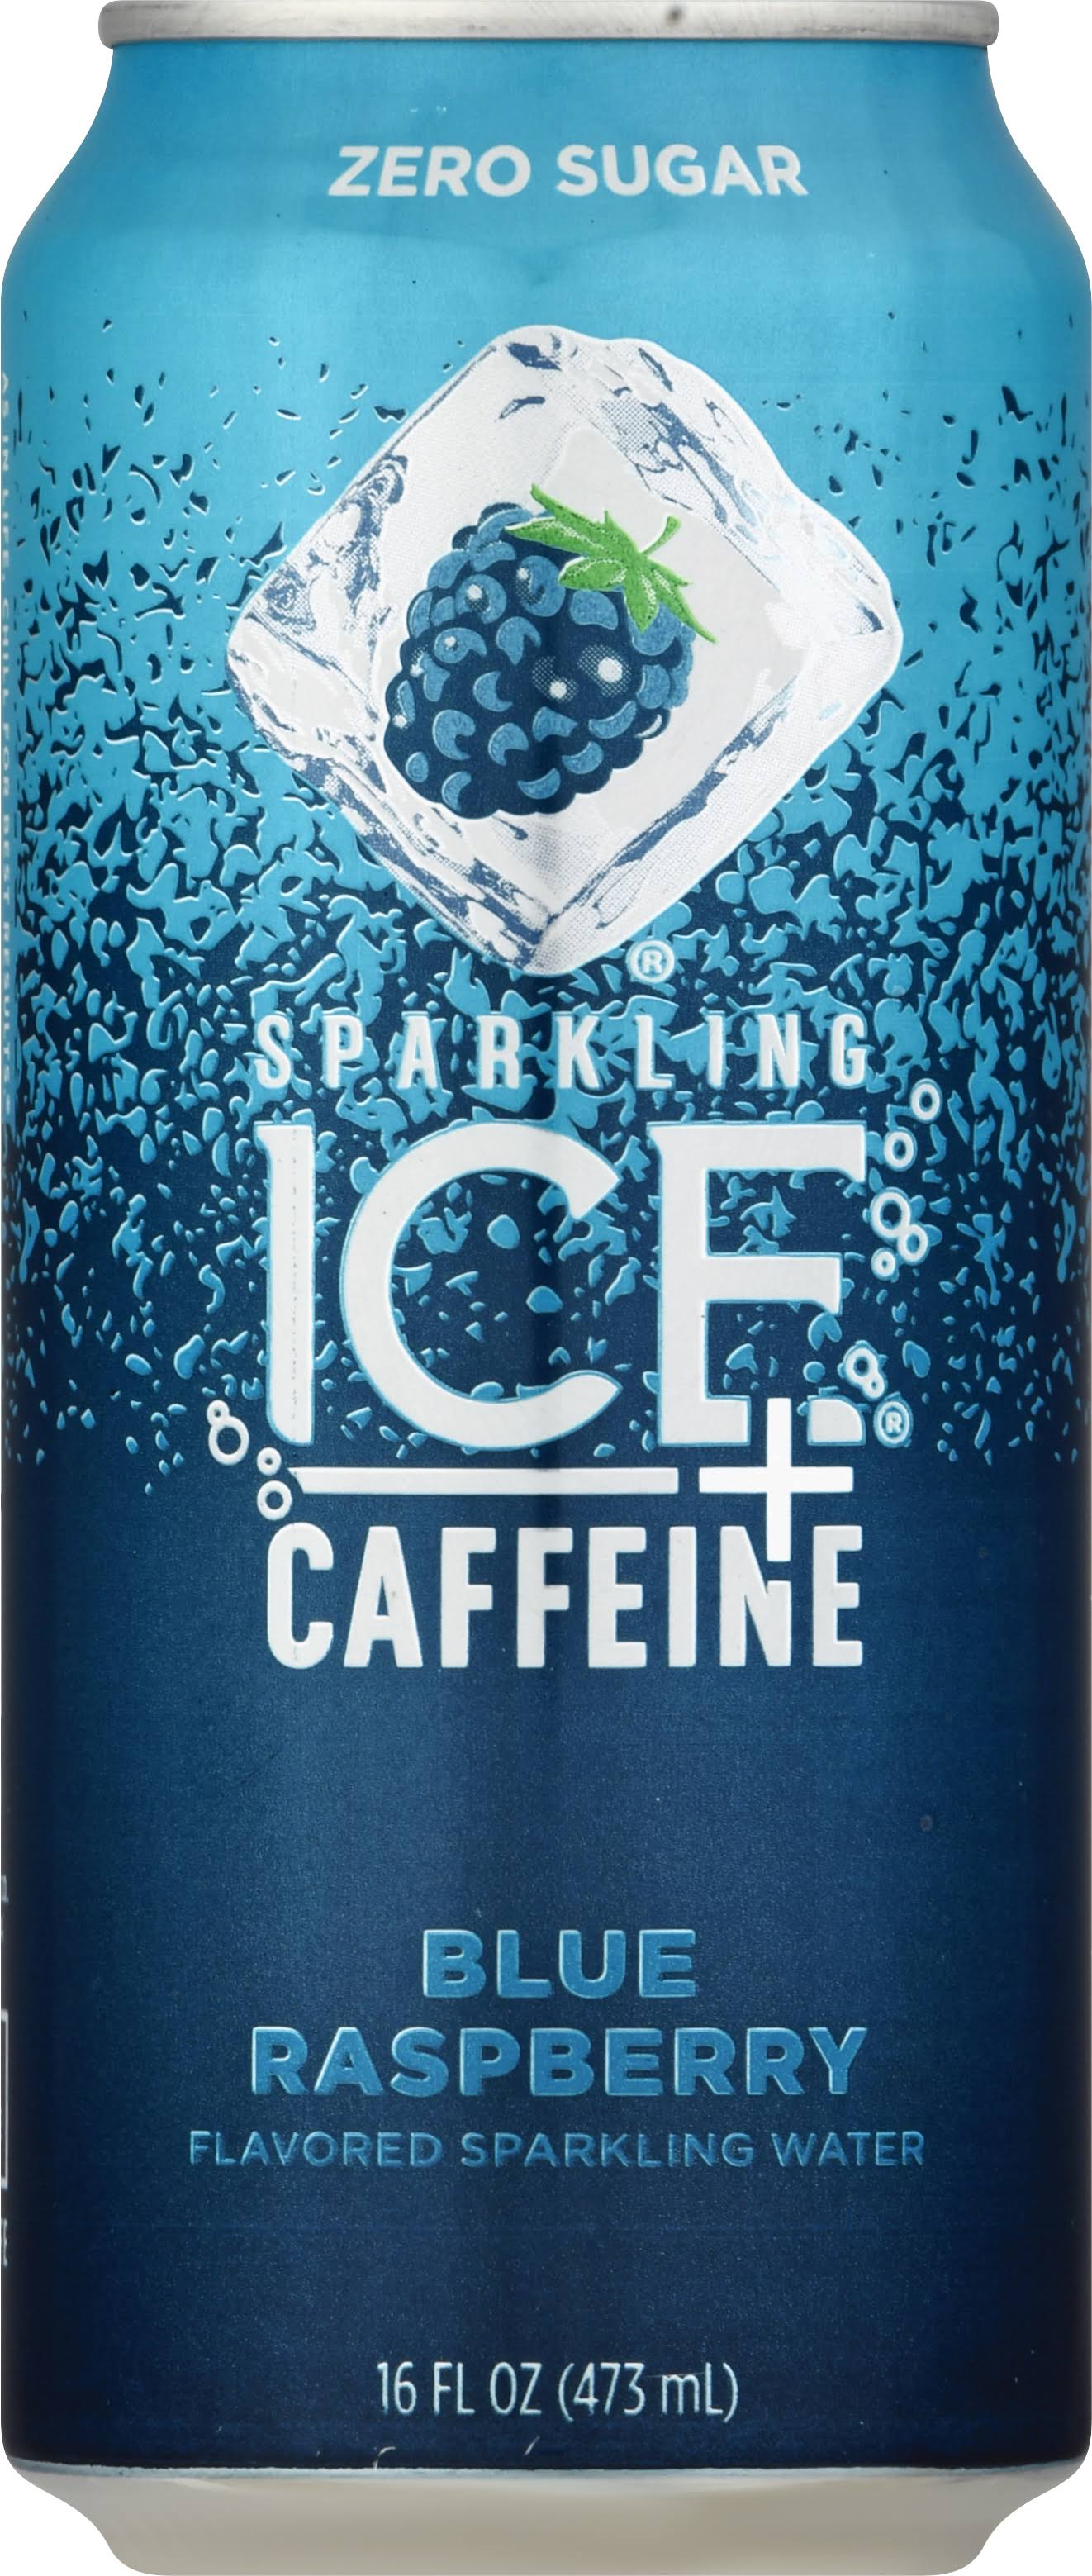 Sparkling Ice +Caffeine Sparkling Water, Zero Sugar, Blue Raspberry - 16 fl oz